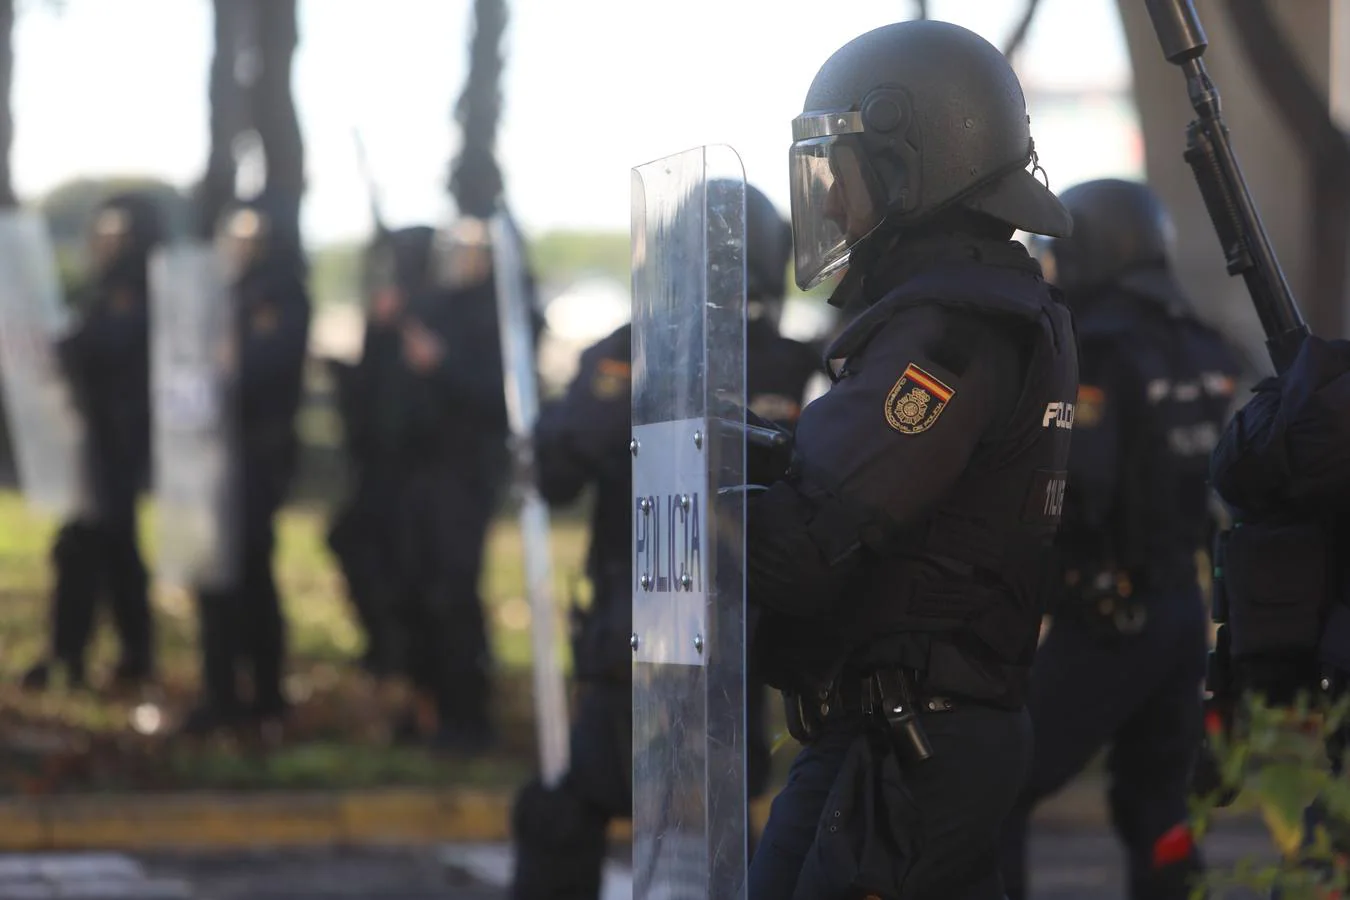 Fotos: lanzamiento de objetos y cargas policiales en el Río San Pedro